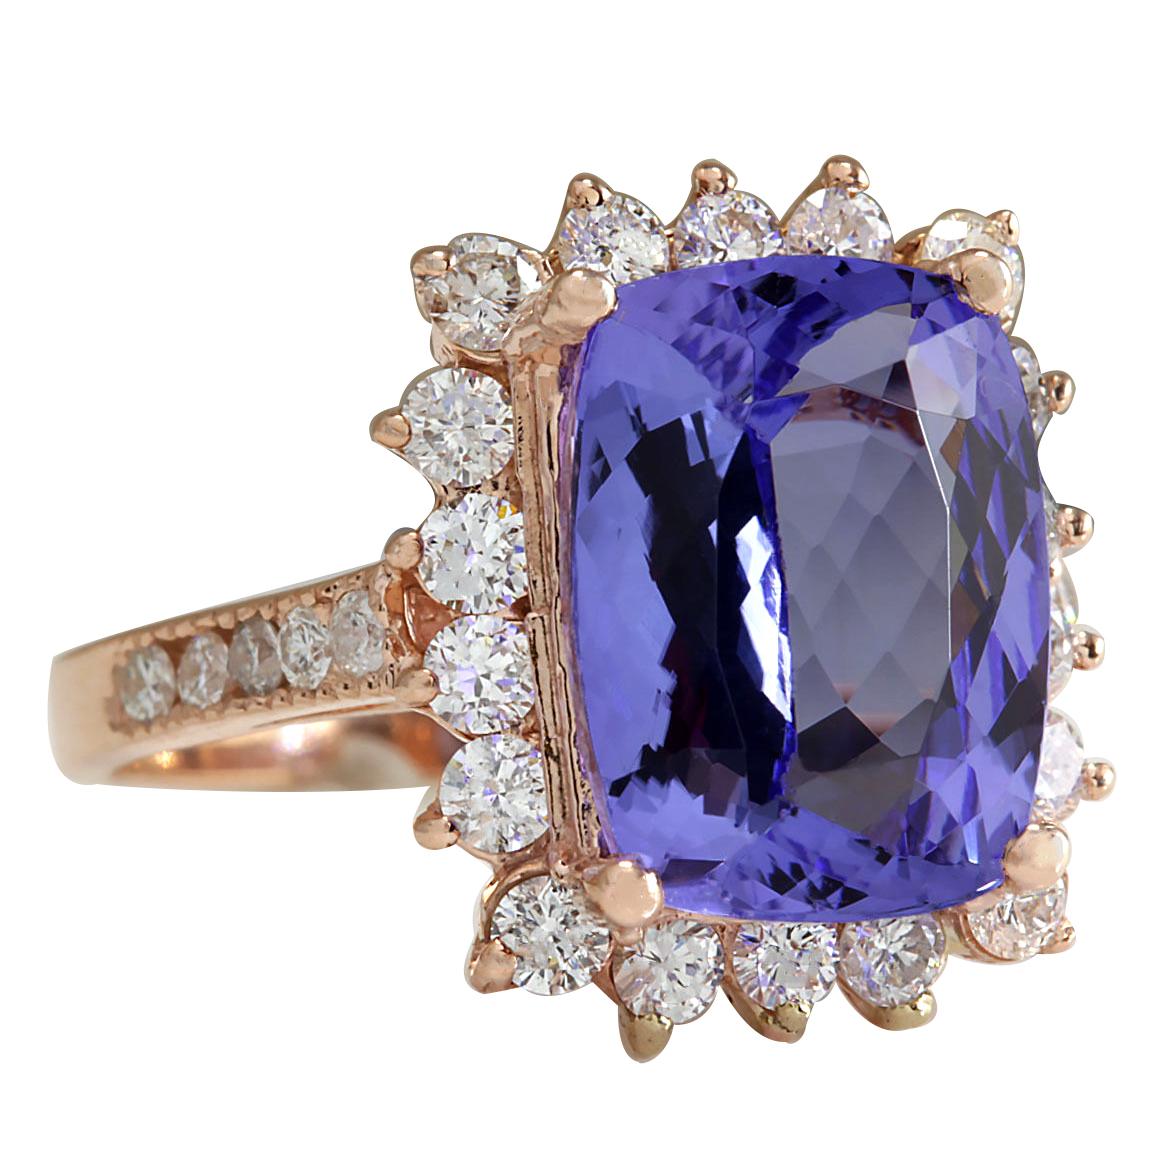 6.89 Carat Tanzanite 14 Karat Rose Gold Diamond Ring
Stamped: 14K Rose Gold
Total Ring Weight: 6.2 Grams
Total  Tanzanite Weight is 5.69 Carat (Measures: 12.00x10.00 mm)
Color: Blue
Total  Diamond Weight is 1.20 Carat
Color: F-G, Clarity: